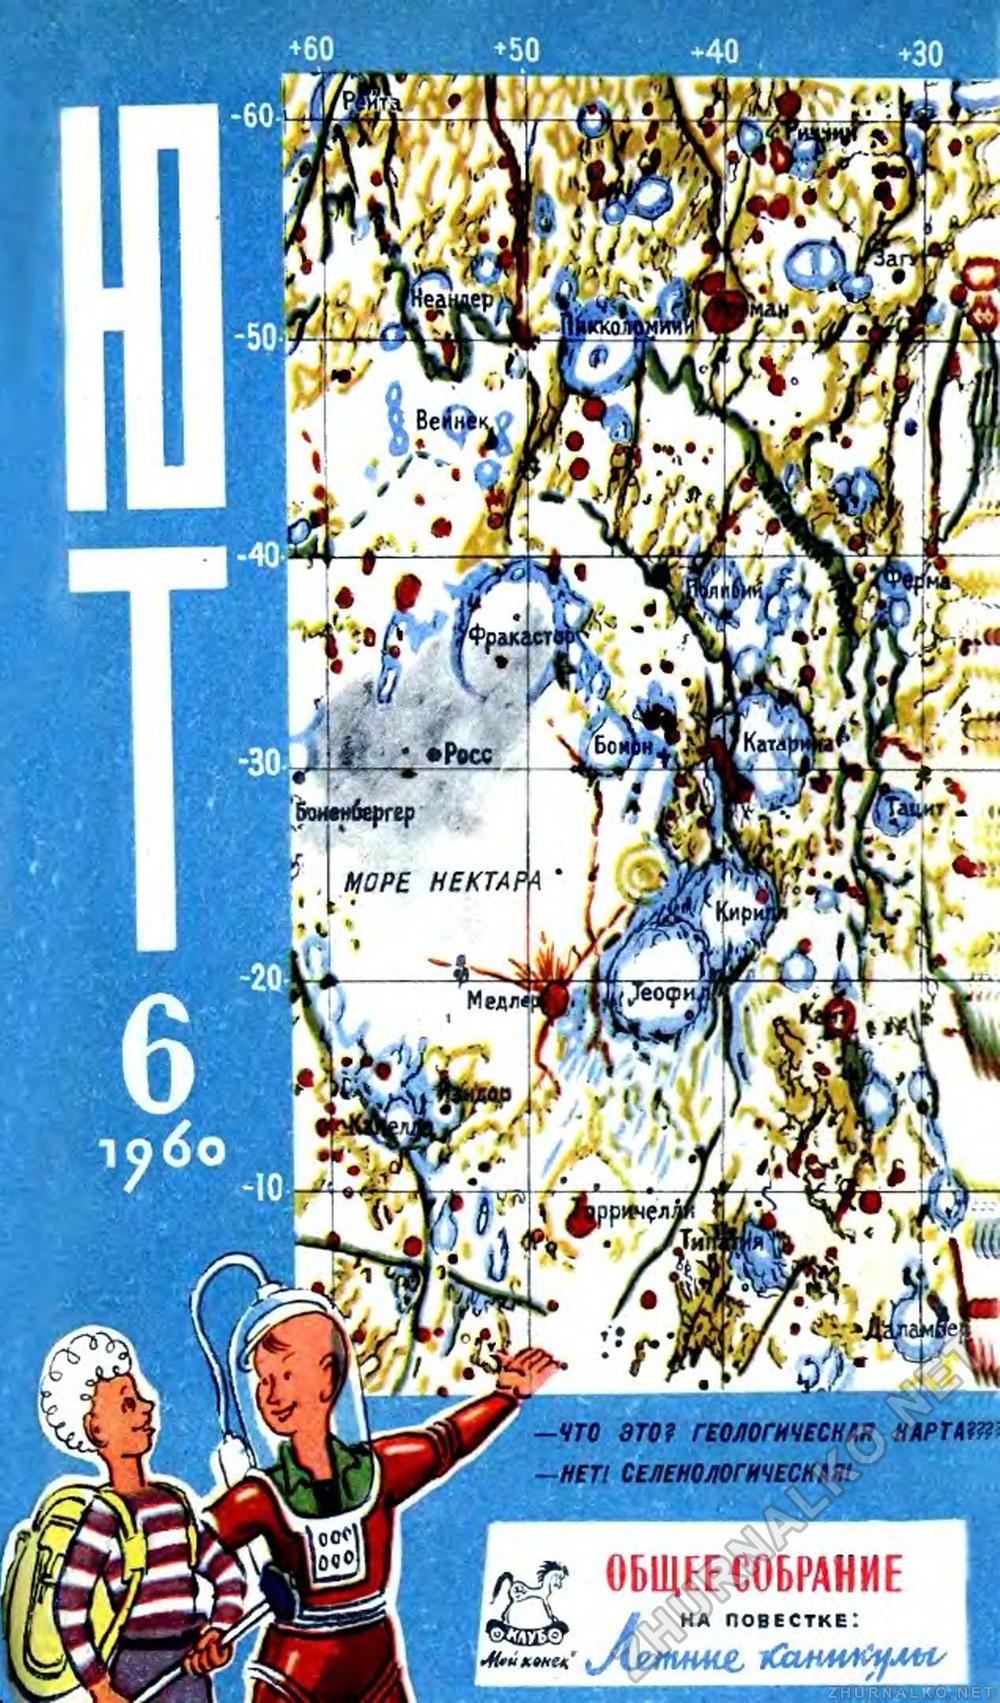   1960-06,  1